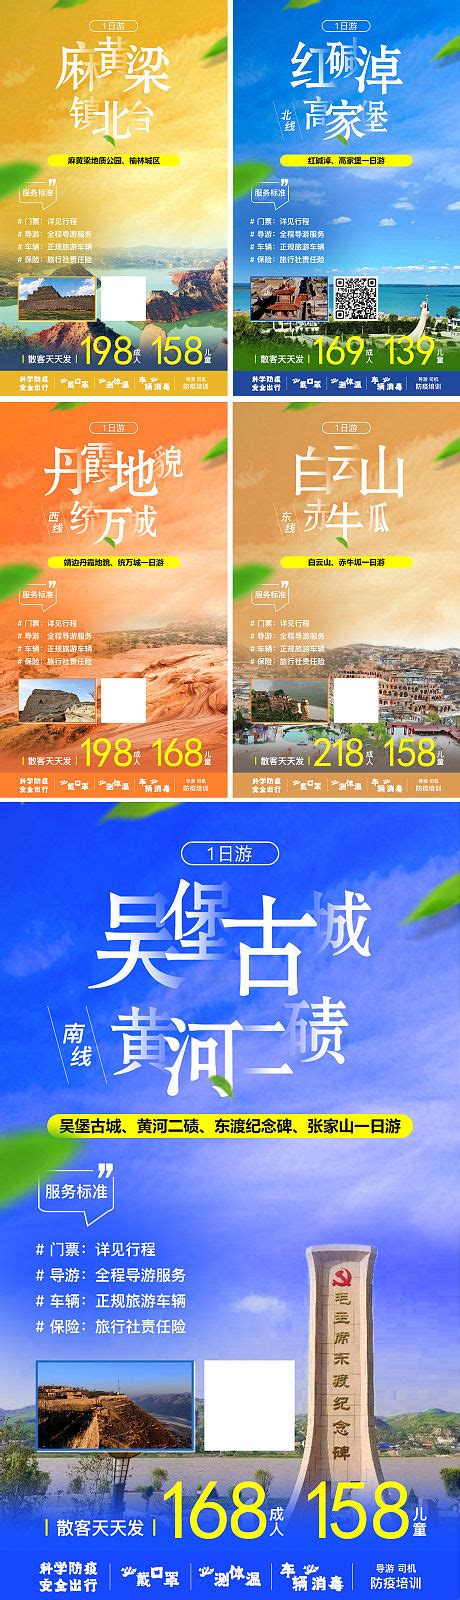 2019“陕北榆林过大年”活动启动 打造全国知名年俗文化旅游品牌 - 知乎